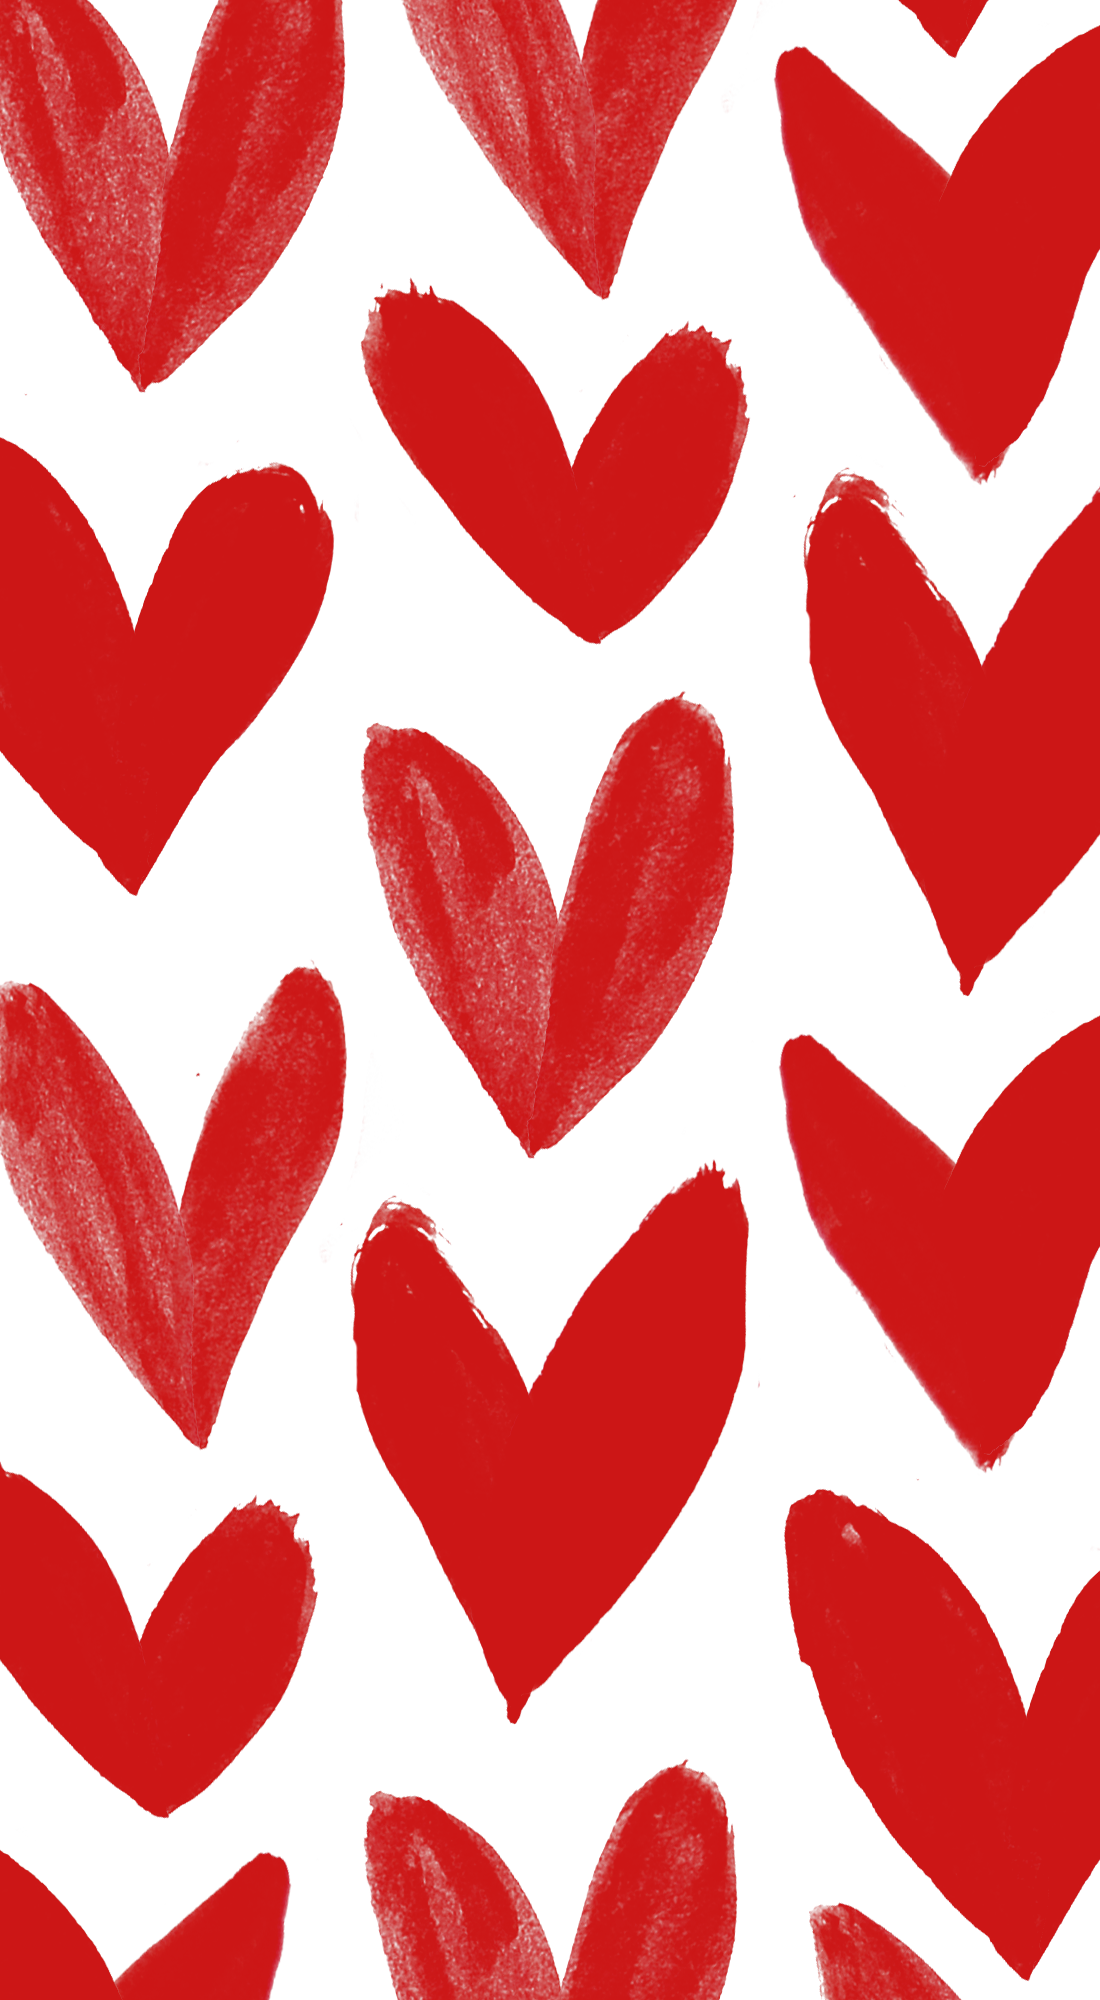 バレンタインデーの壁紙,心臓,赤,バレンタイン・デー,愛,パターン